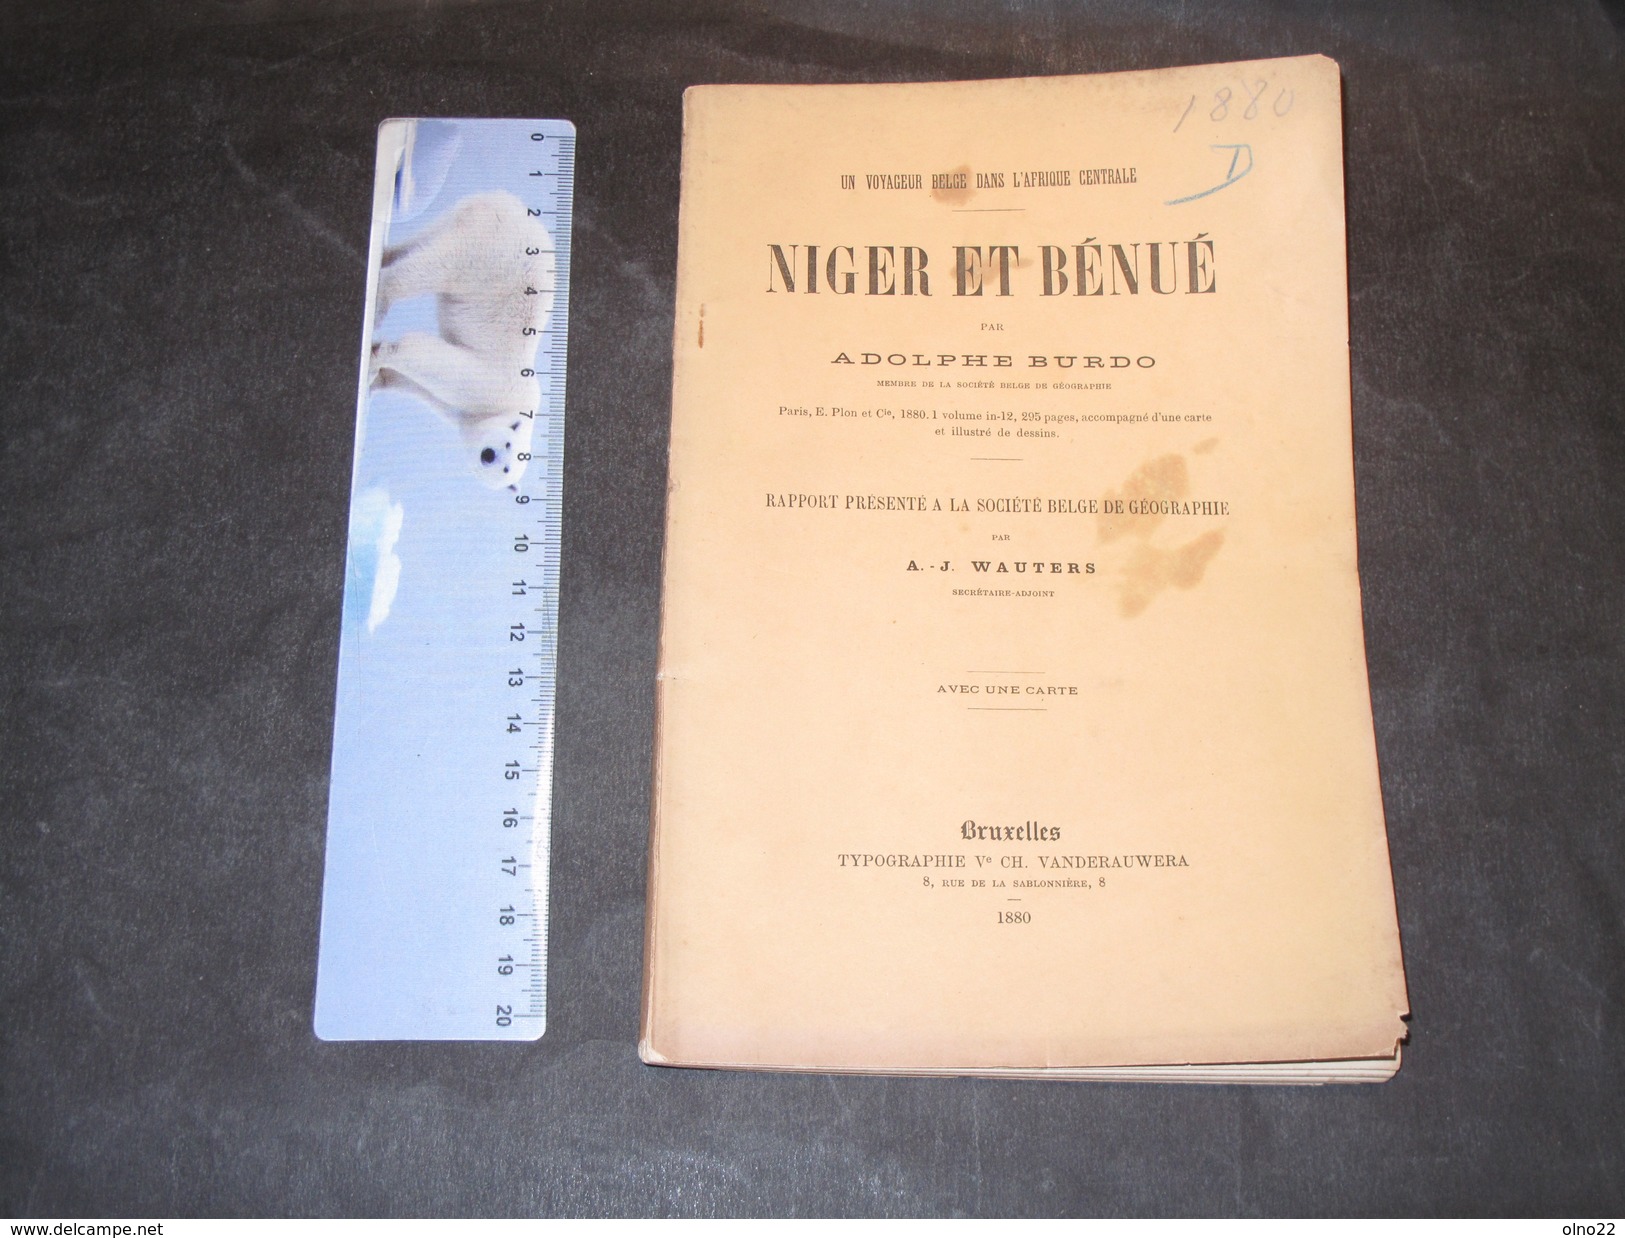 BURDO, ADOLPHE, NIGER ET BENUE, Un Voyageur Belge Dans L'Afrique Centrale, Bruxelles, 1880 - Histoire